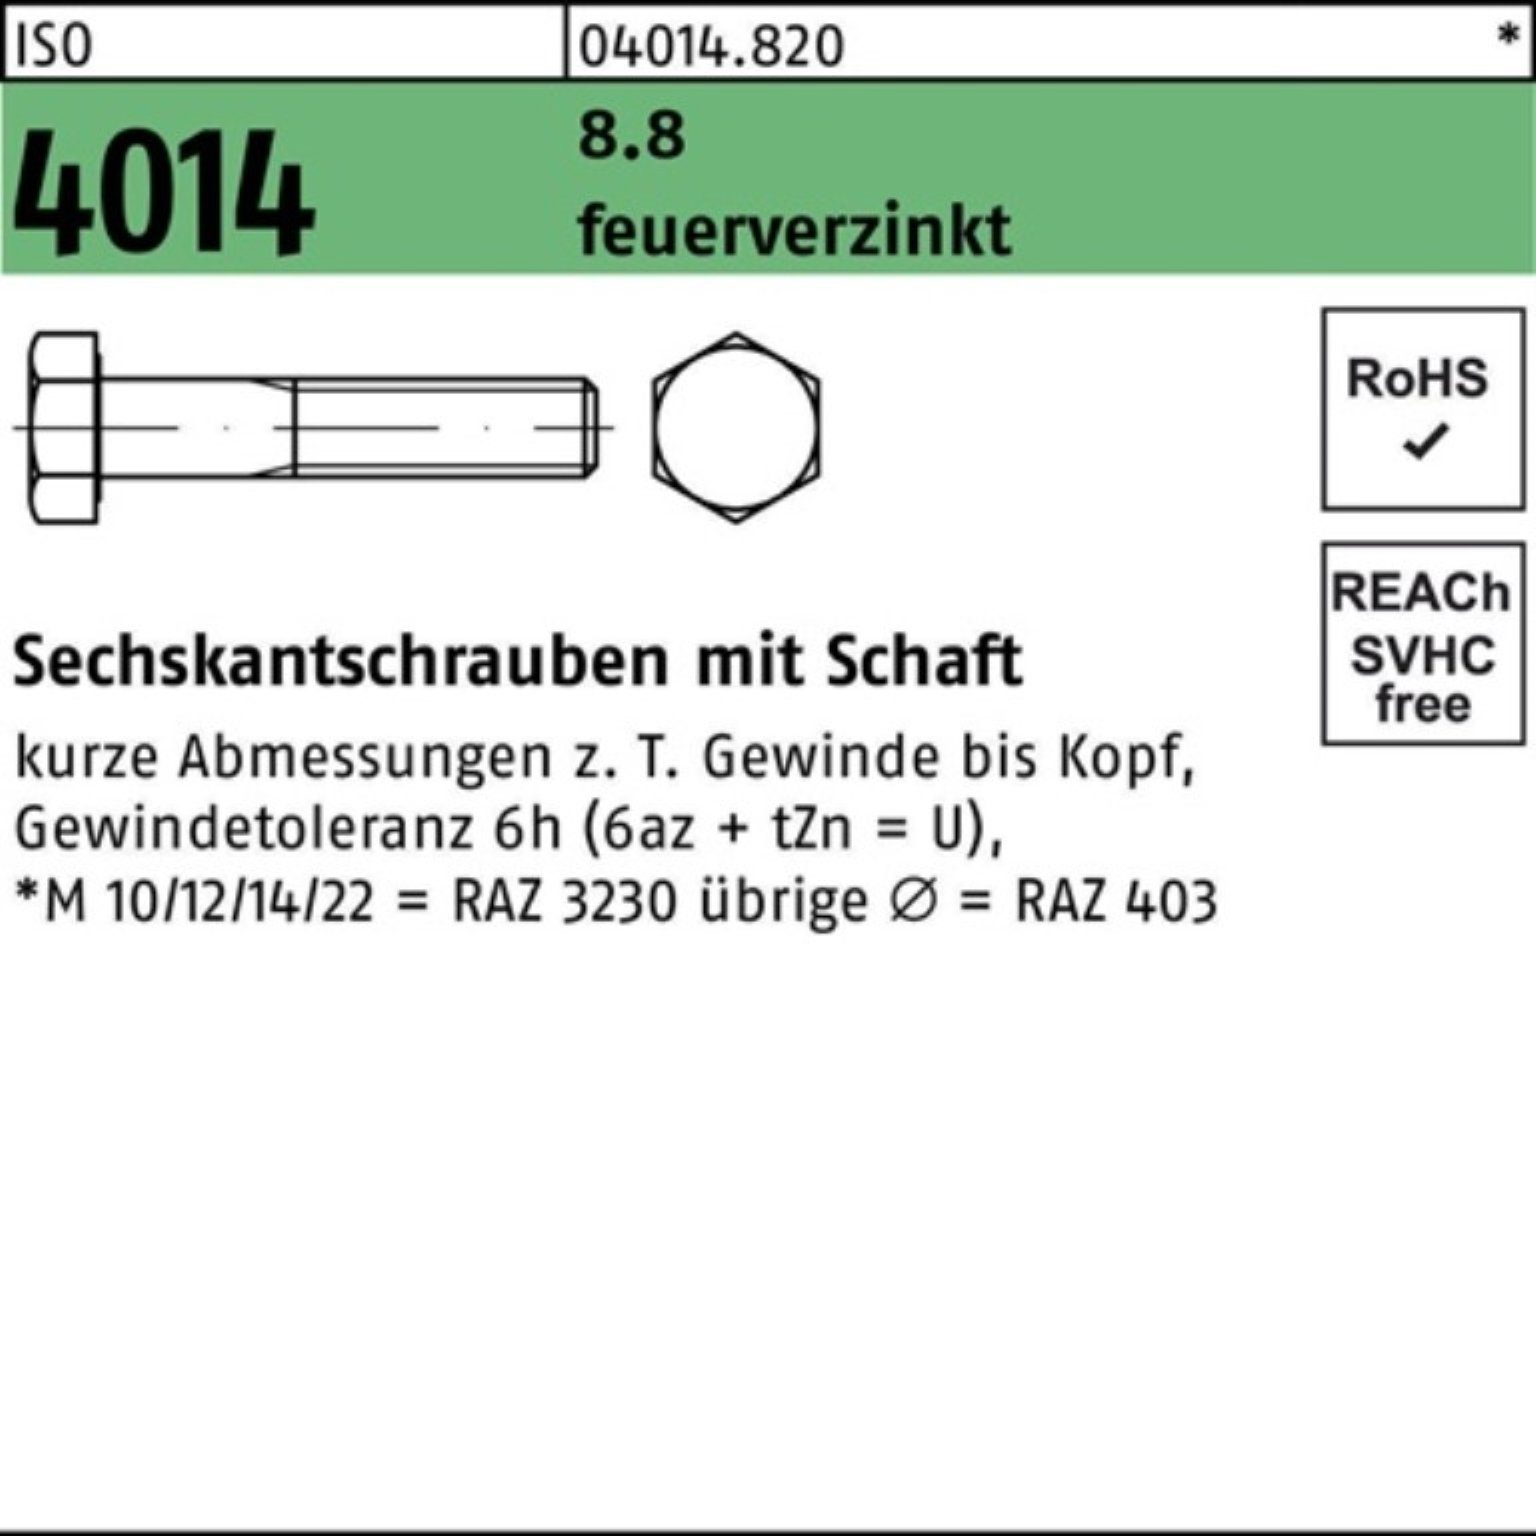 Sechskantschraube Pack 4014 Schaft 190 Bufab 100er M36x Sechskantschraube 8.8 ISO 1 feuerverz.